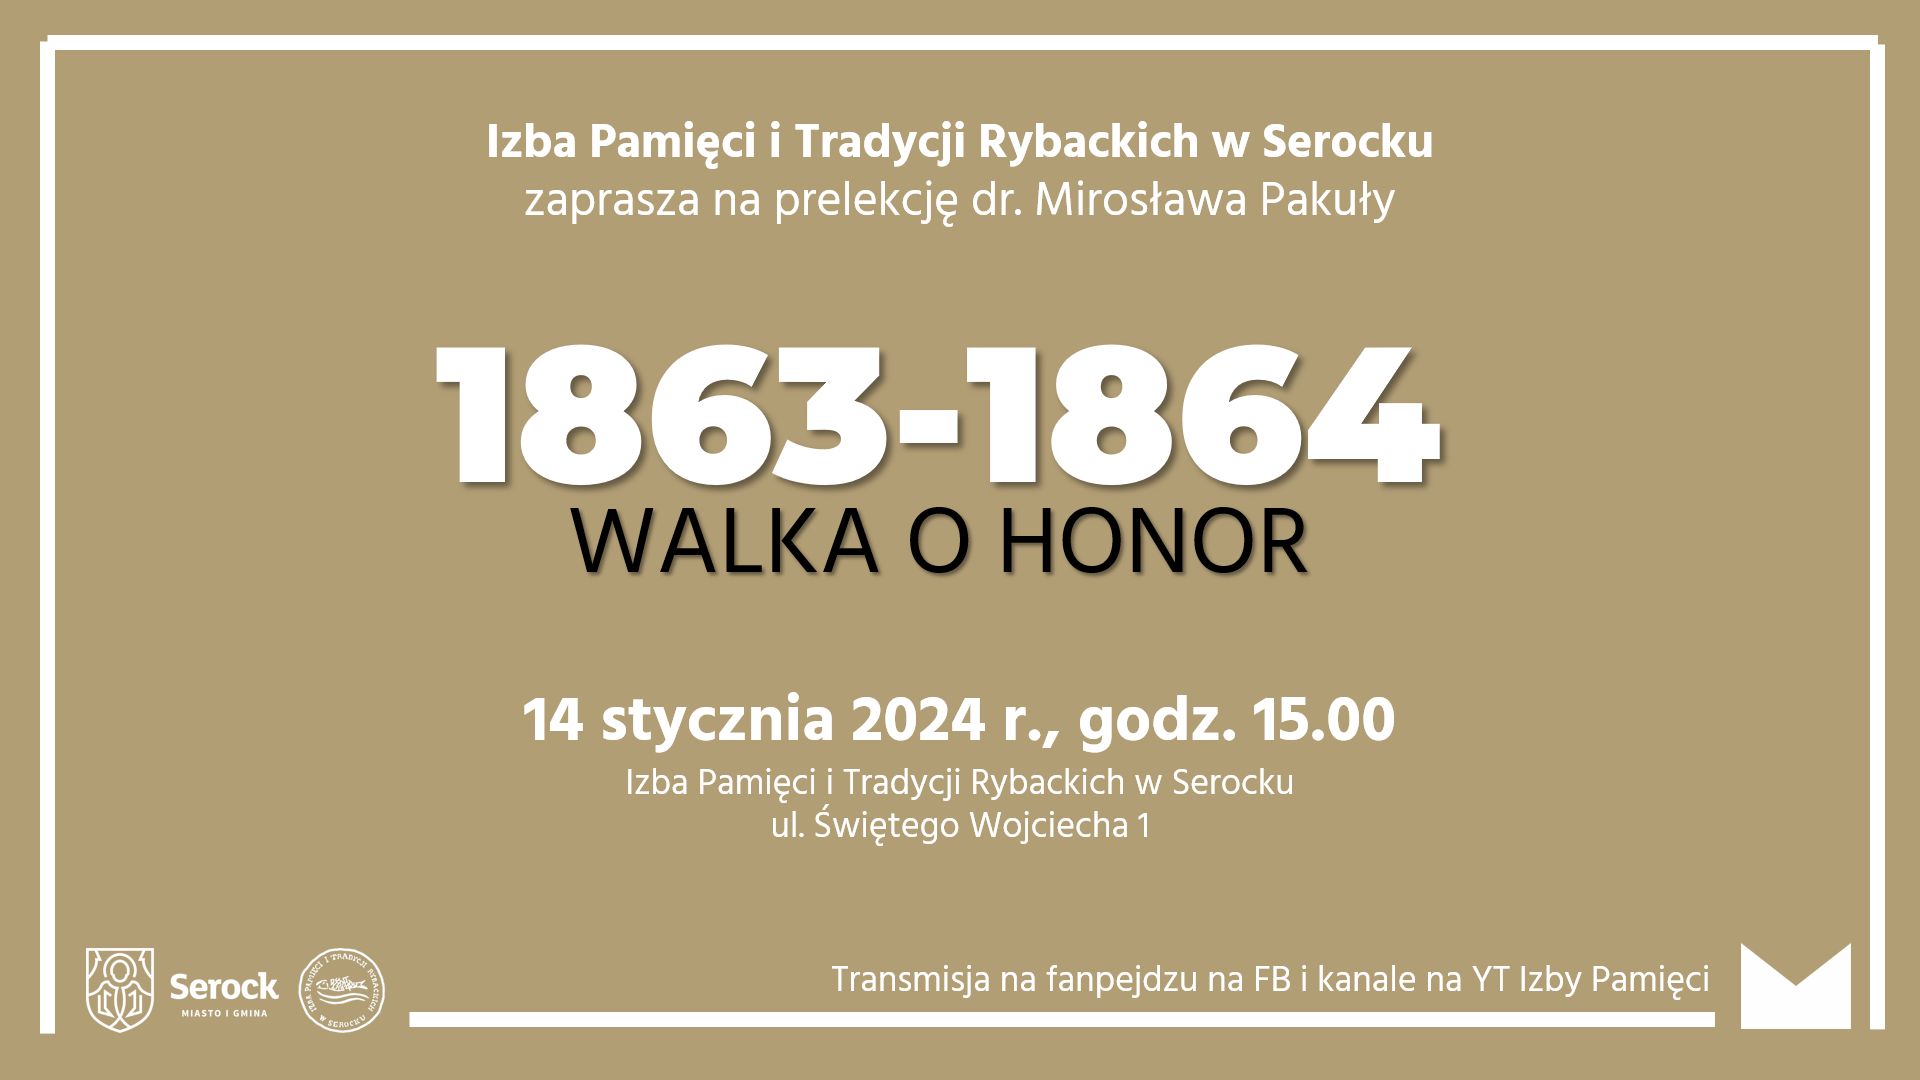 Prelekcja dr. Mirosława Pakuły "1863-1864. Walka o honor"